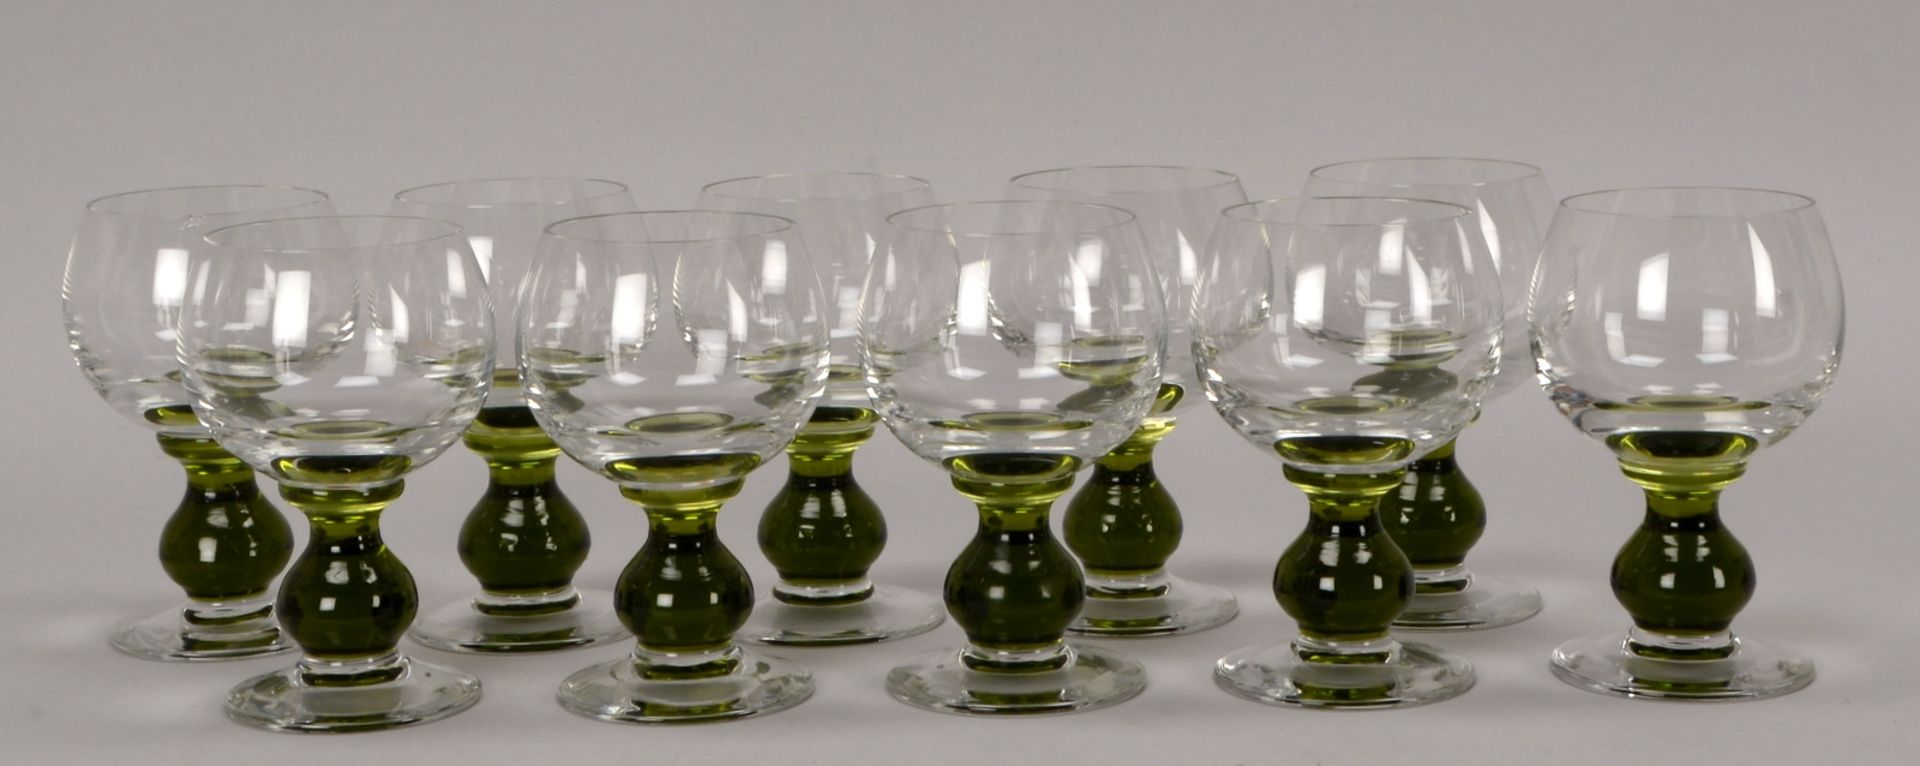 Satz Weißweingläser, Klarglas, mit grünem Mittelfuß, 9 Stück